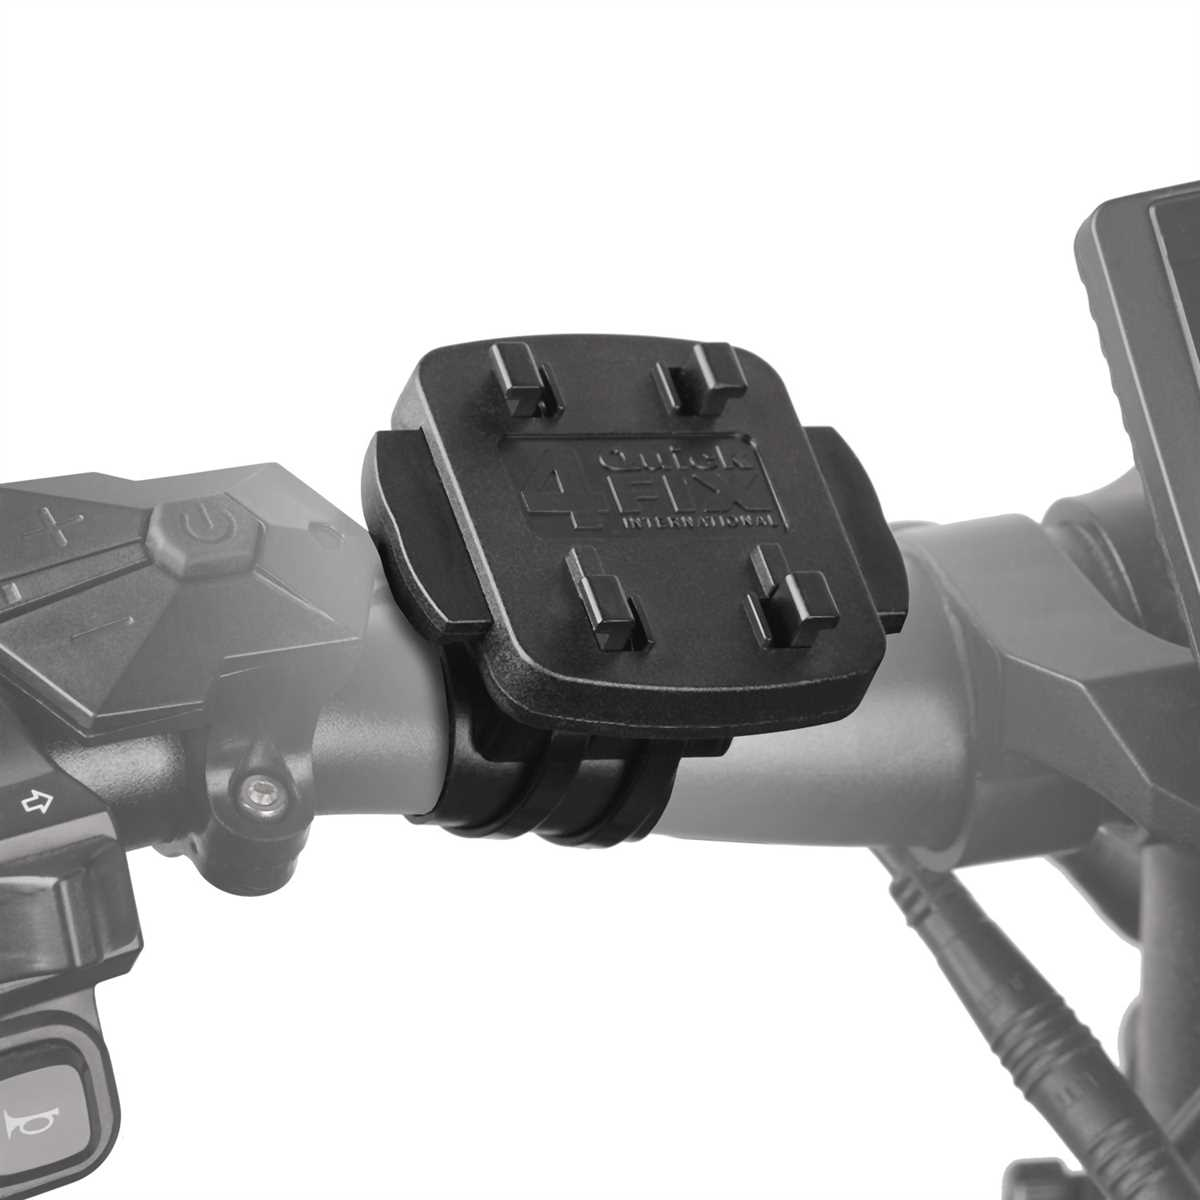 / CHILI 12 Motorradhalterung schwarz QuickMOUNT Fahrrad Apple Pro Motorrad Zoll) für (6,1 iPhone / 12 Handy / WICKED Halterung, Set Fahrradhalterung